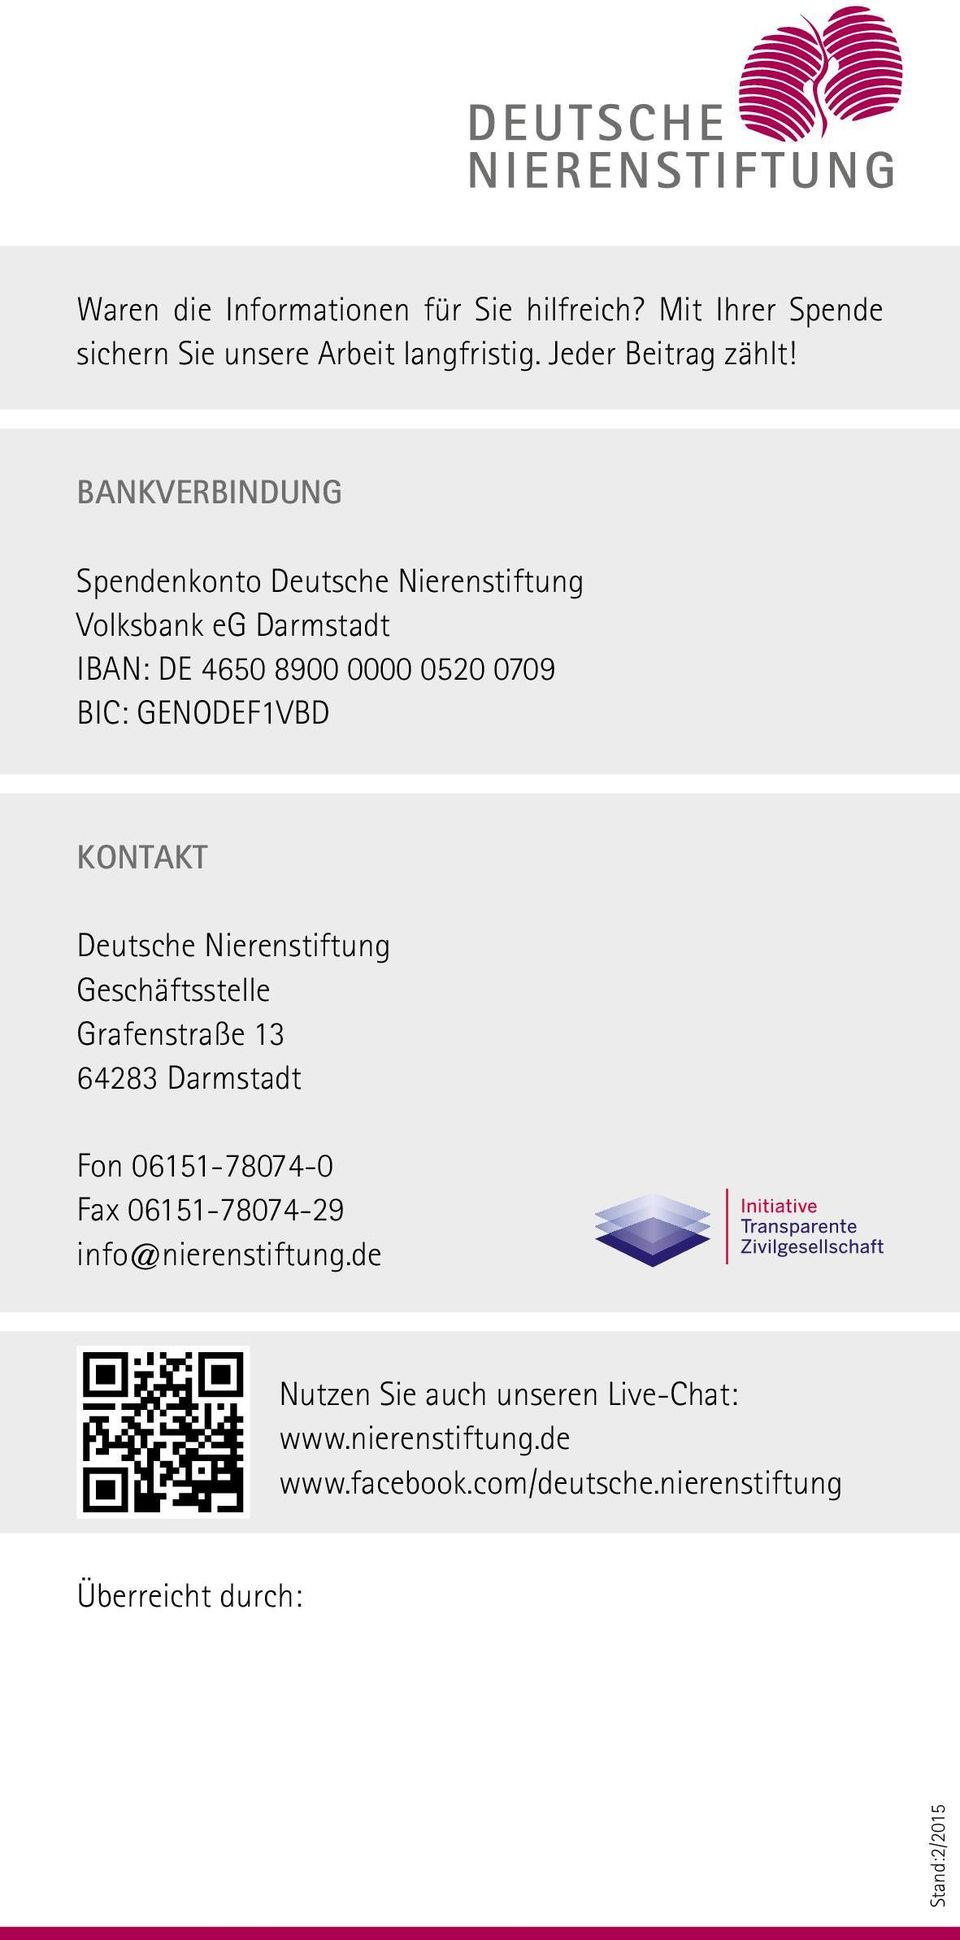 Kontakt Deutsche Nierenstiftung Geschäftsstelle Grafenstraße 13 64283 Darmstadt Fon 06151-78074-0 Fax 06151-78074-29